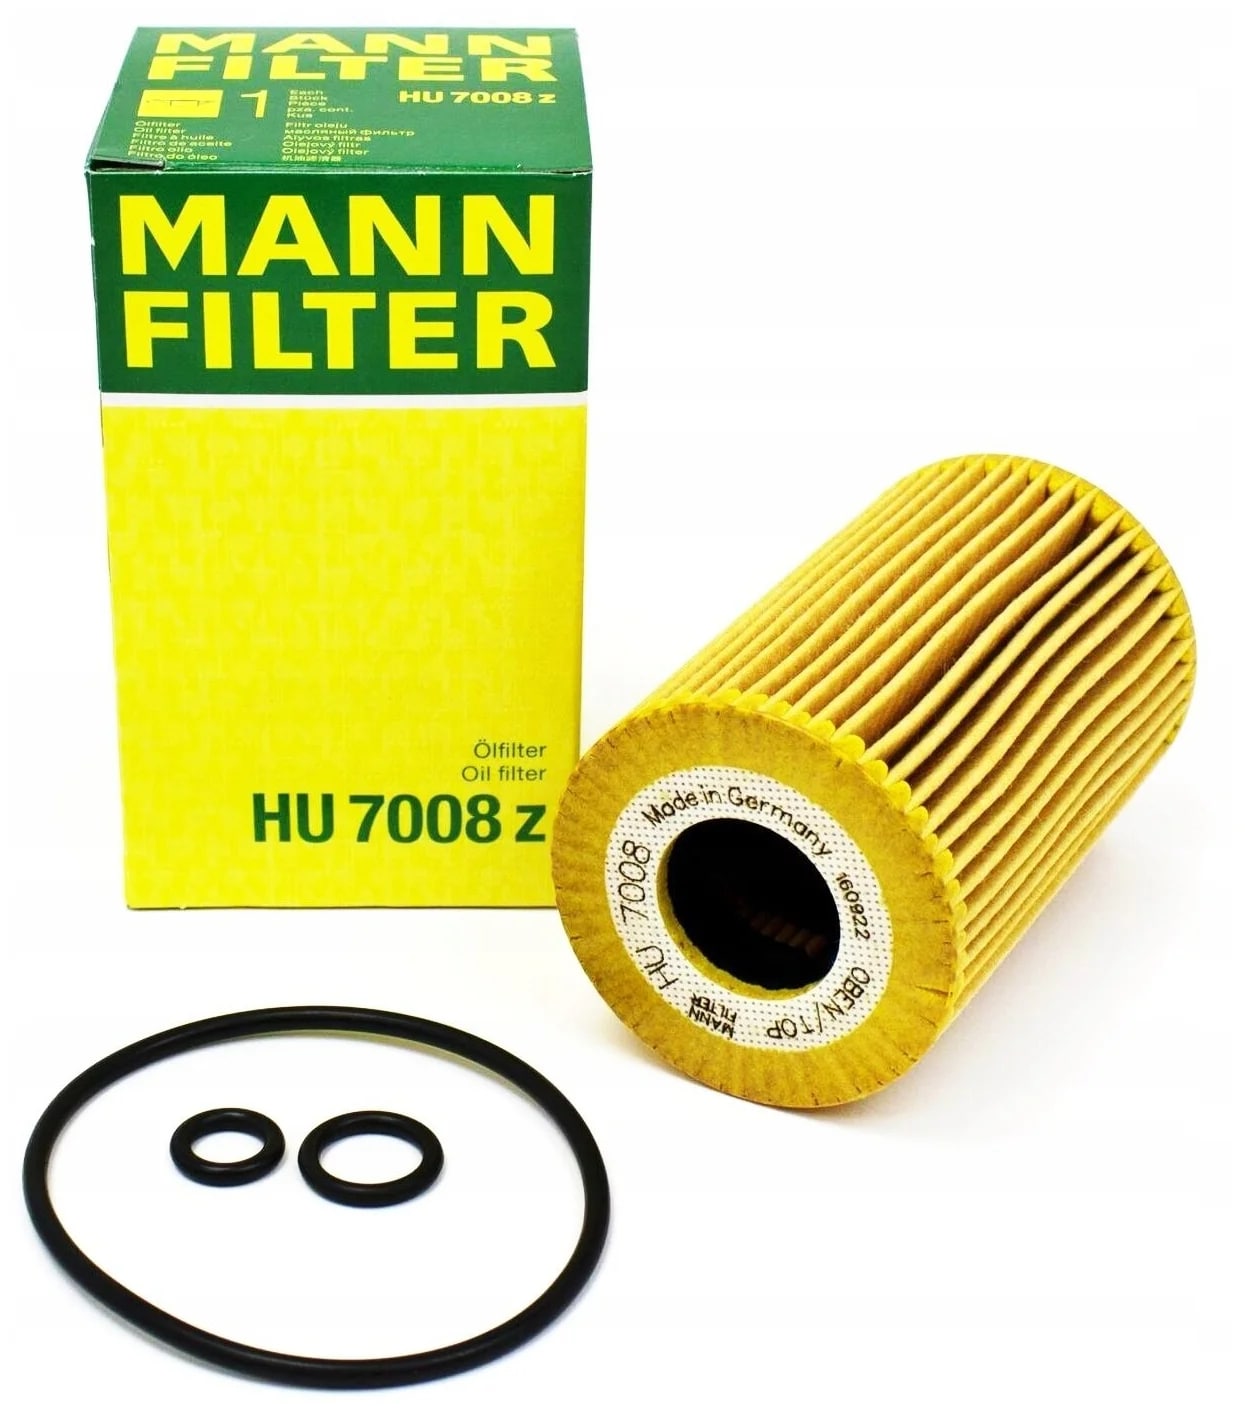 Hu7985. Фильтр Mann hu7008z. Фильтр масляный Манн hu7008z. Hu 7008 z масляный фильтр. Hu7008z Mann Применяемость фильтр.